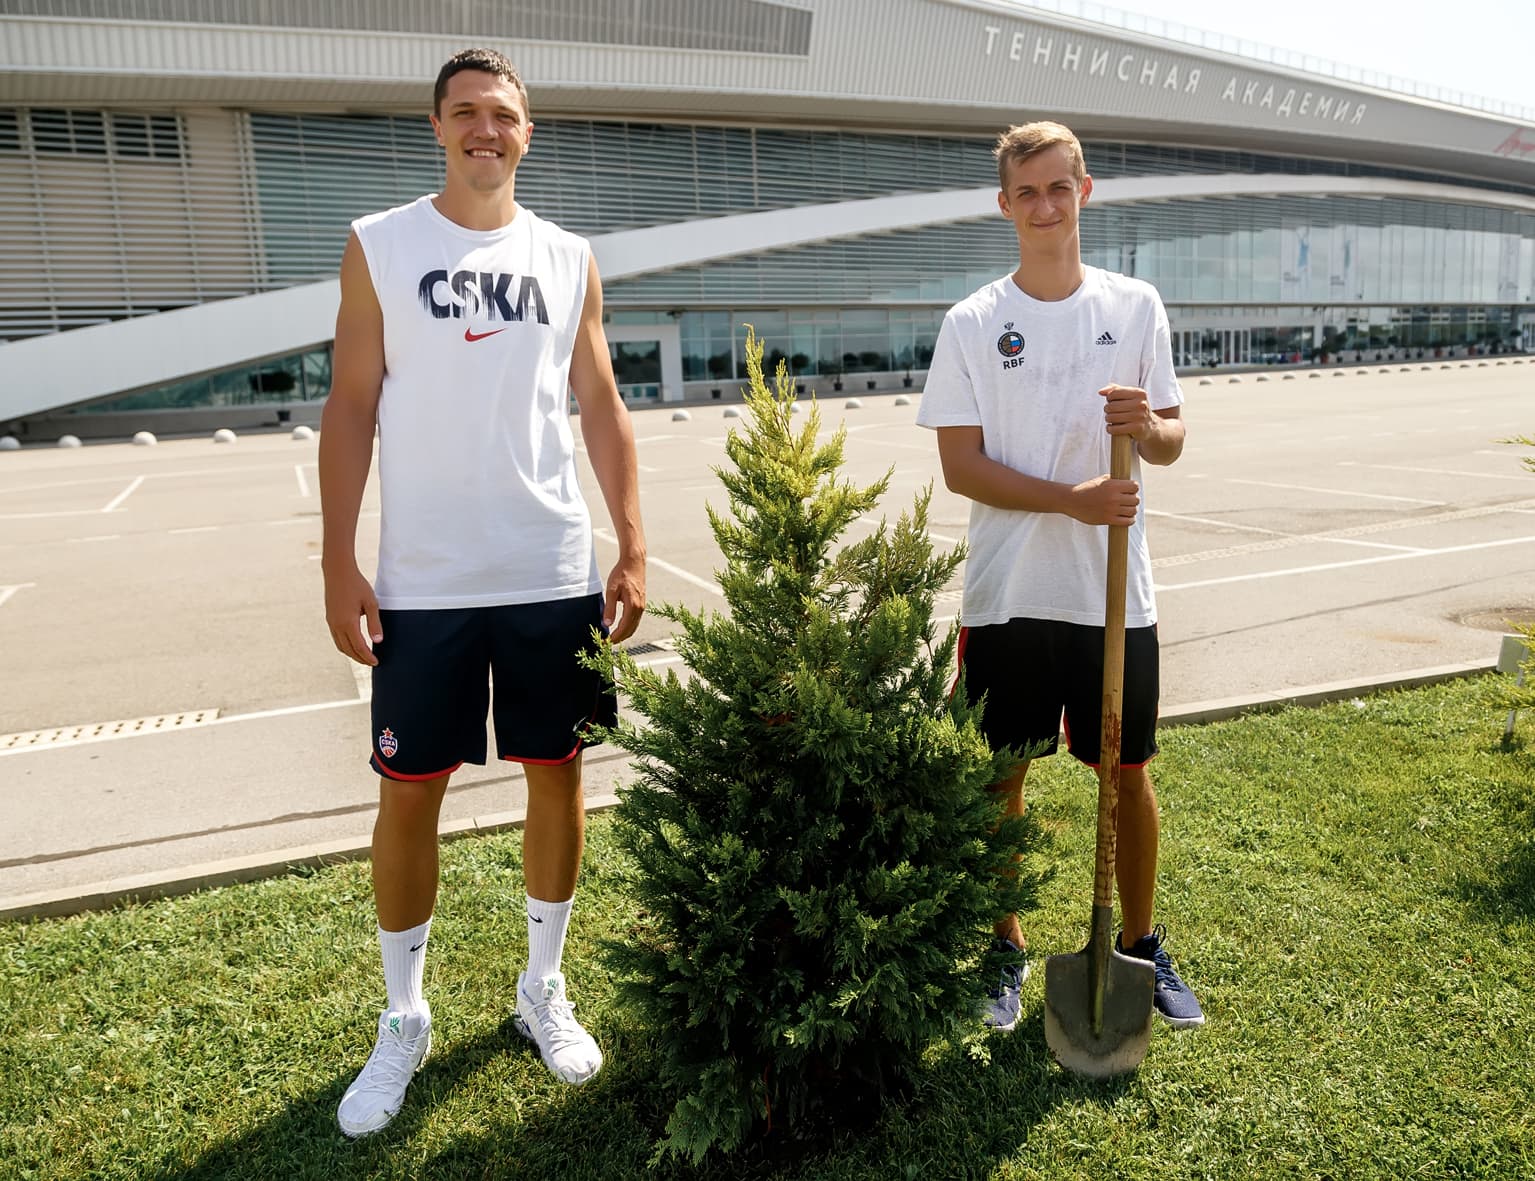 Антонов и Хвостов посадили дерево, Карасев покатался на водных лыжах. Как игроки Лиги провели лето-2018